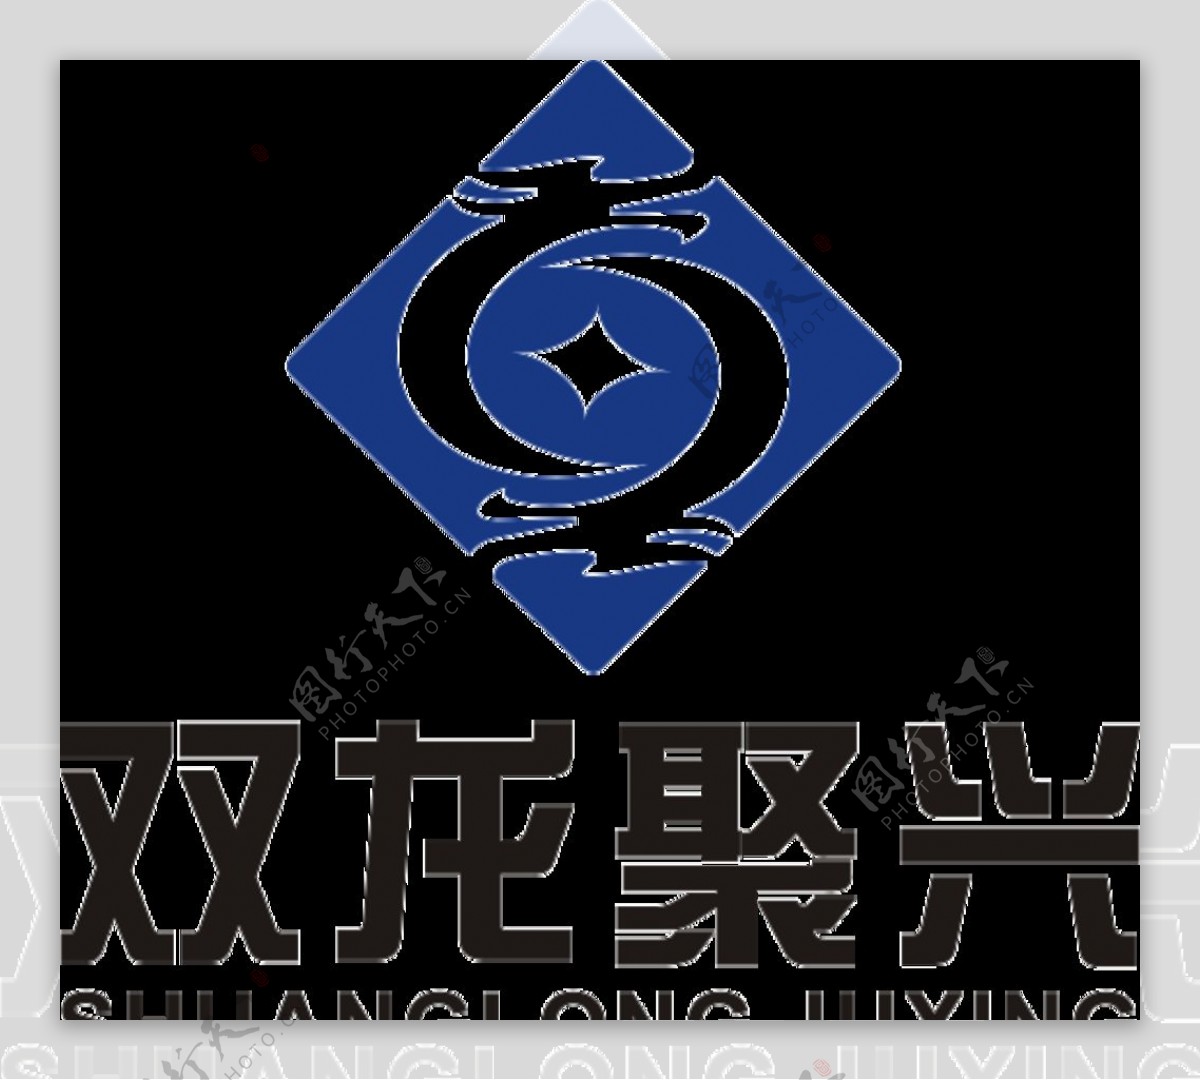 双龙聚星logo图片